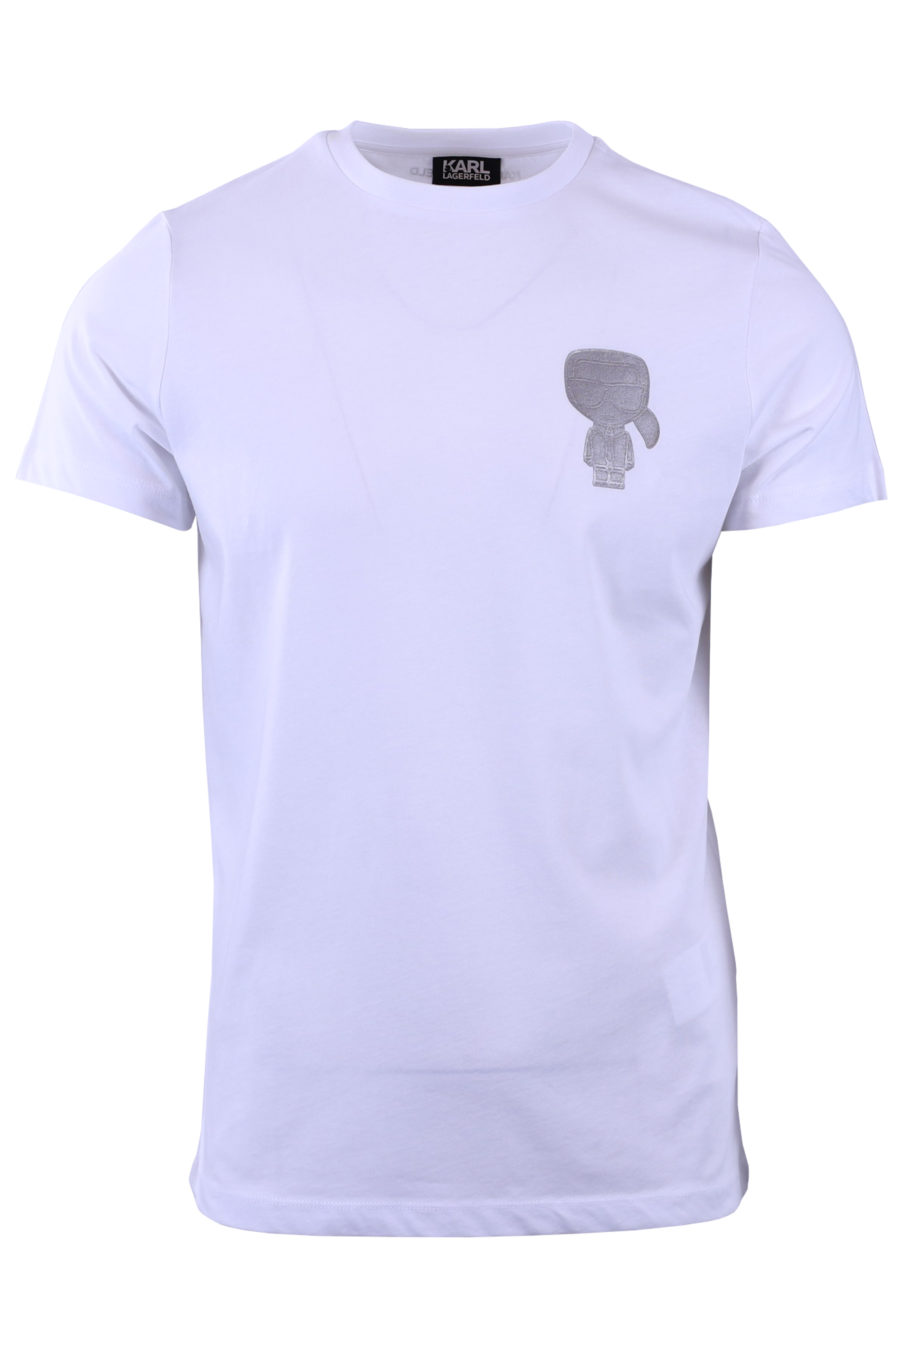 T-shirt branca com perfil Karl prateado - b8454a11d5a3da5c2af3175a9cfb10c67c77e02b